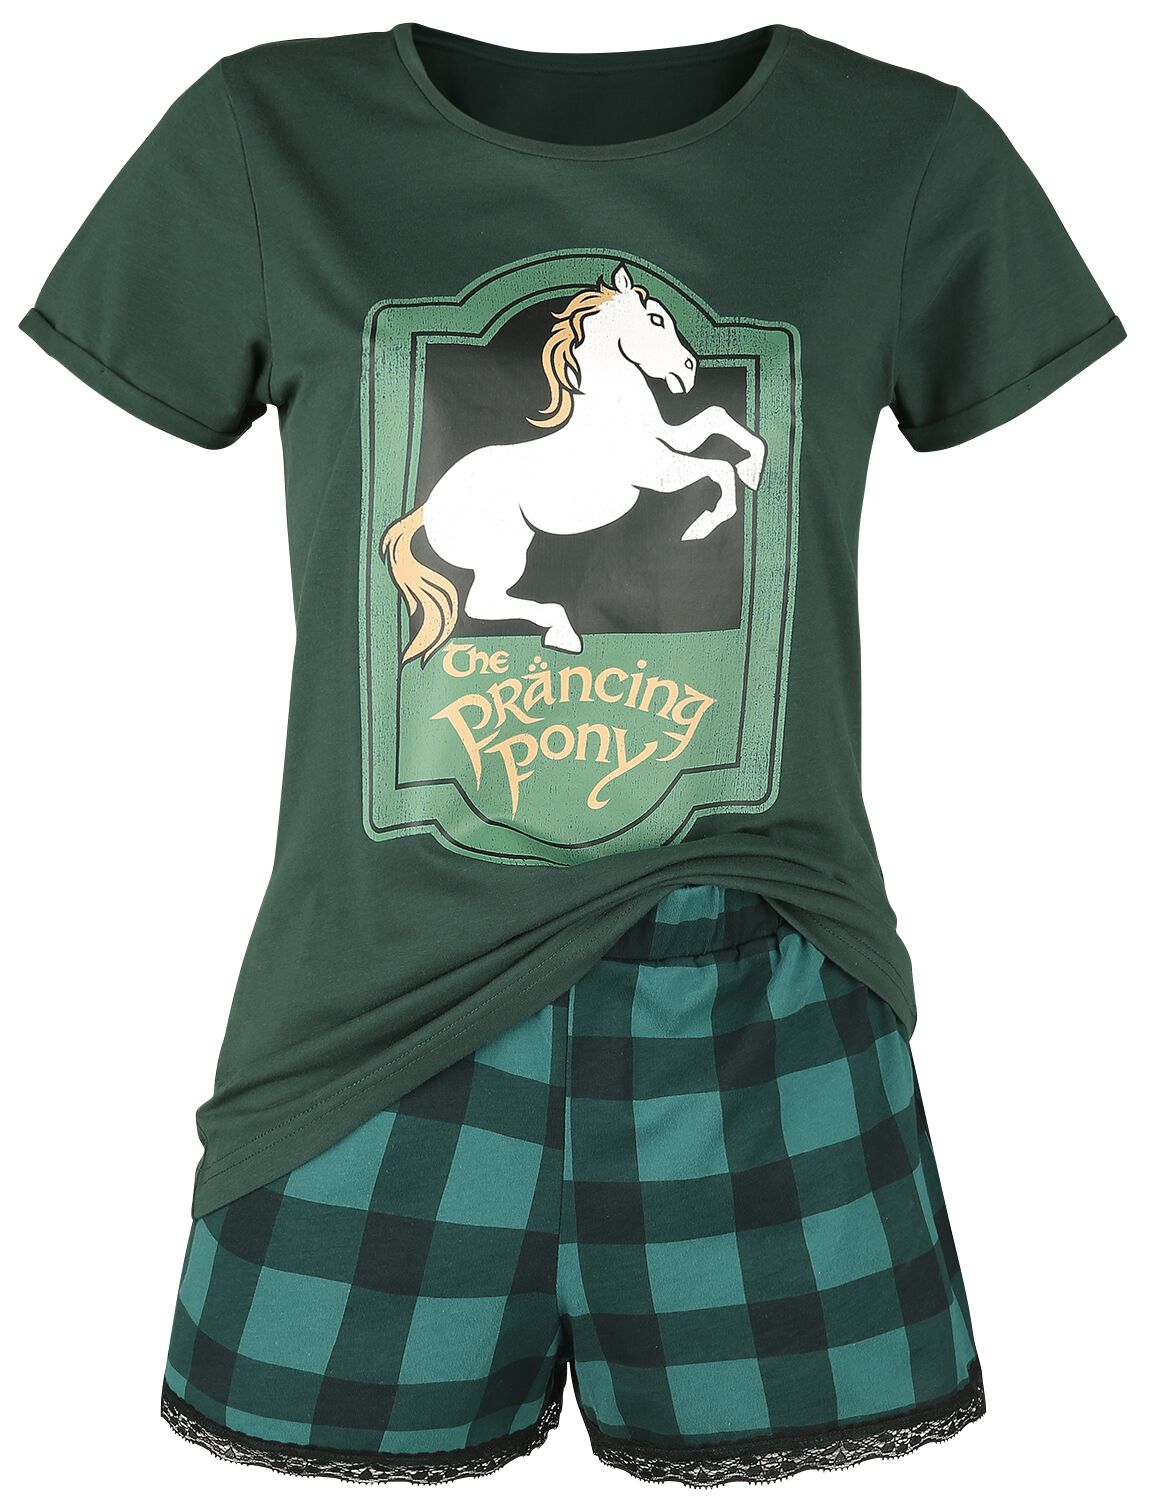 Der Herr der Ringe Schlafanzug - Prancing Pony - XS bis S - für Damen - Größe XS - dunkelgrün  - EMP exklusives Merchandise!